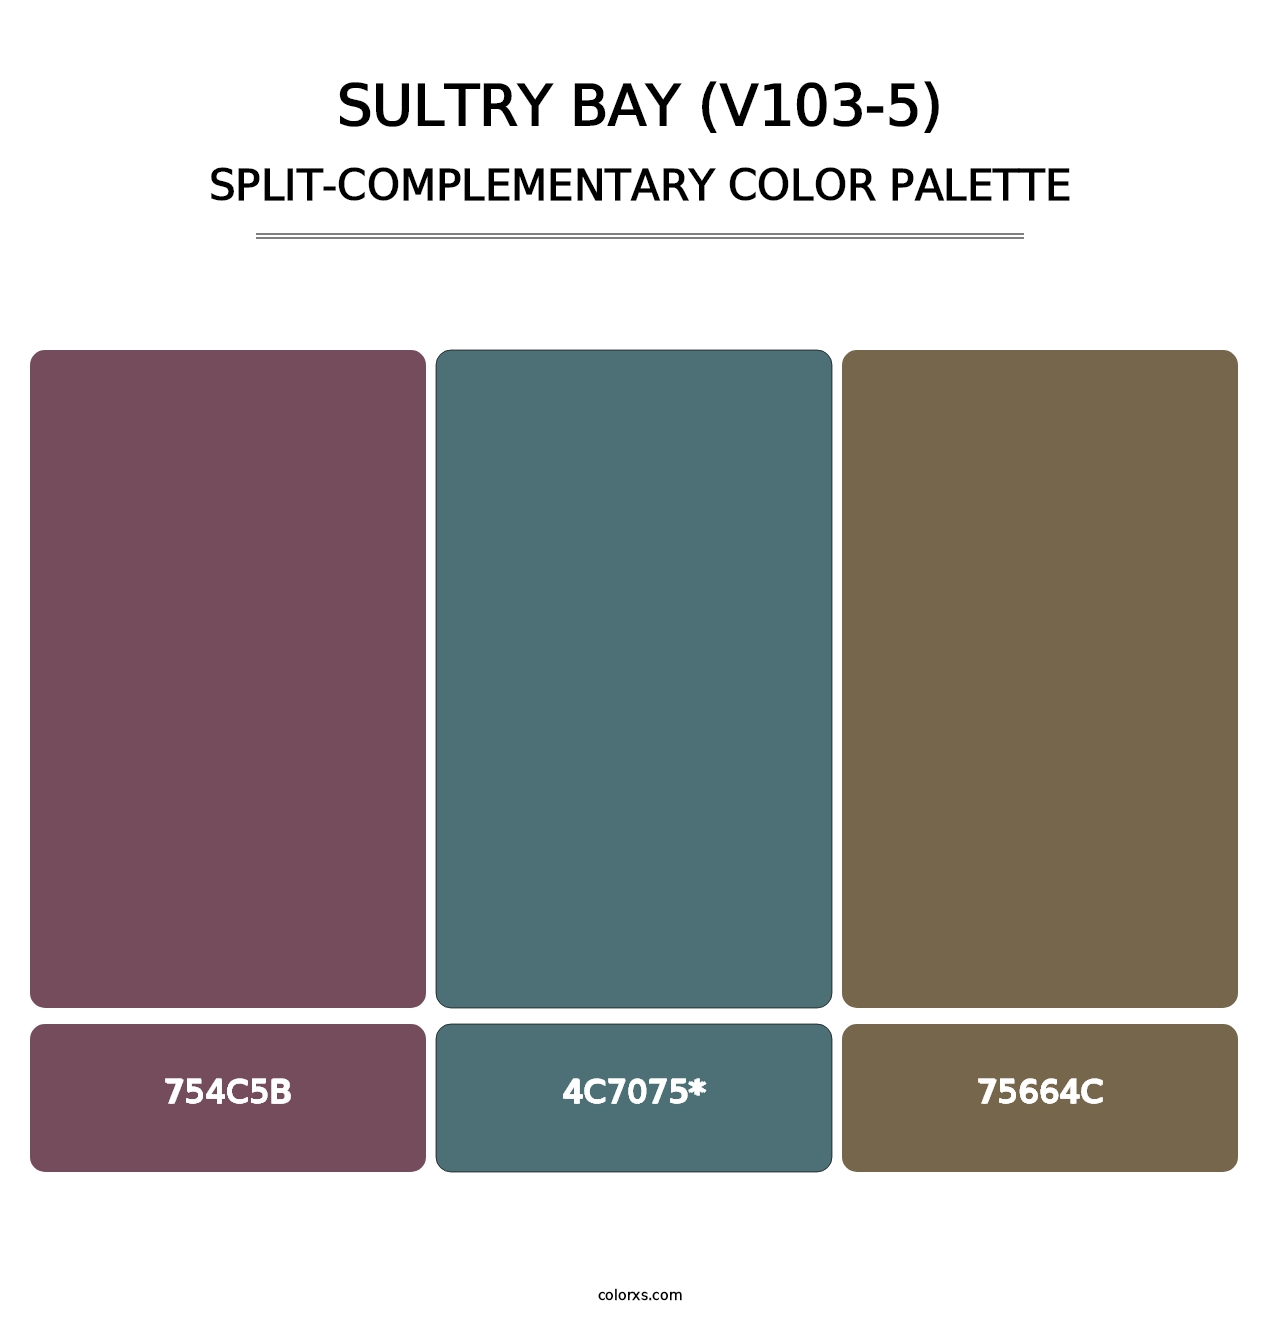 Sultry Bay (V103-5) - Split-Complementary Color Palette